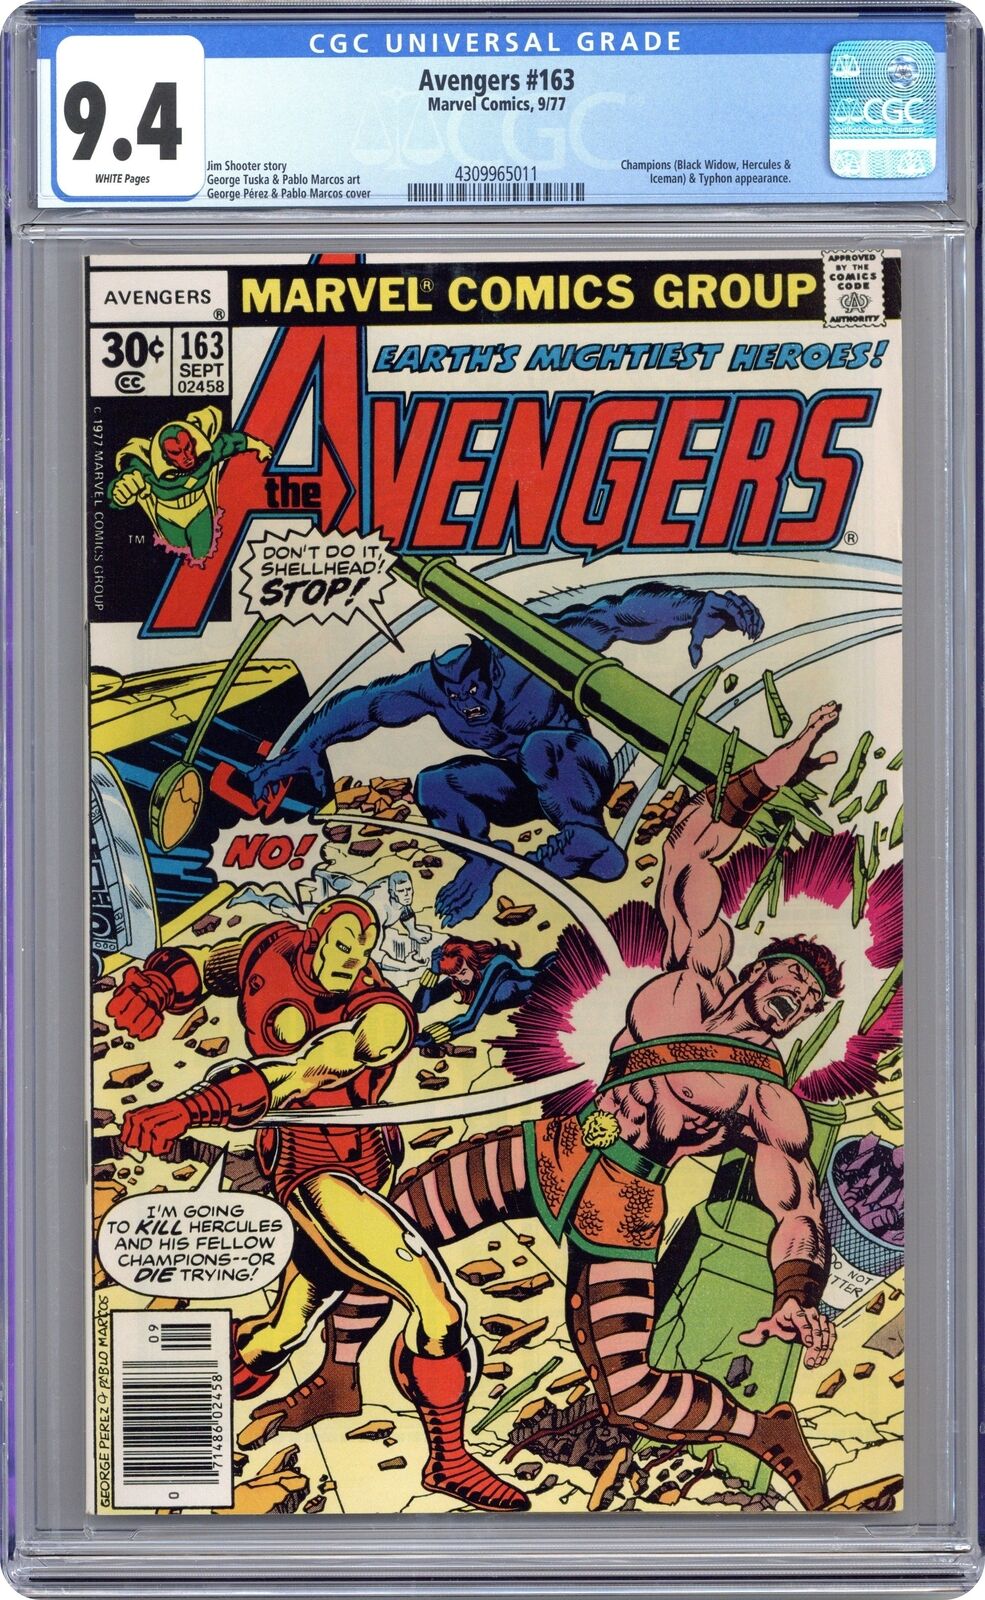 Avengers #163 CGC 9.4 1977 4309965011